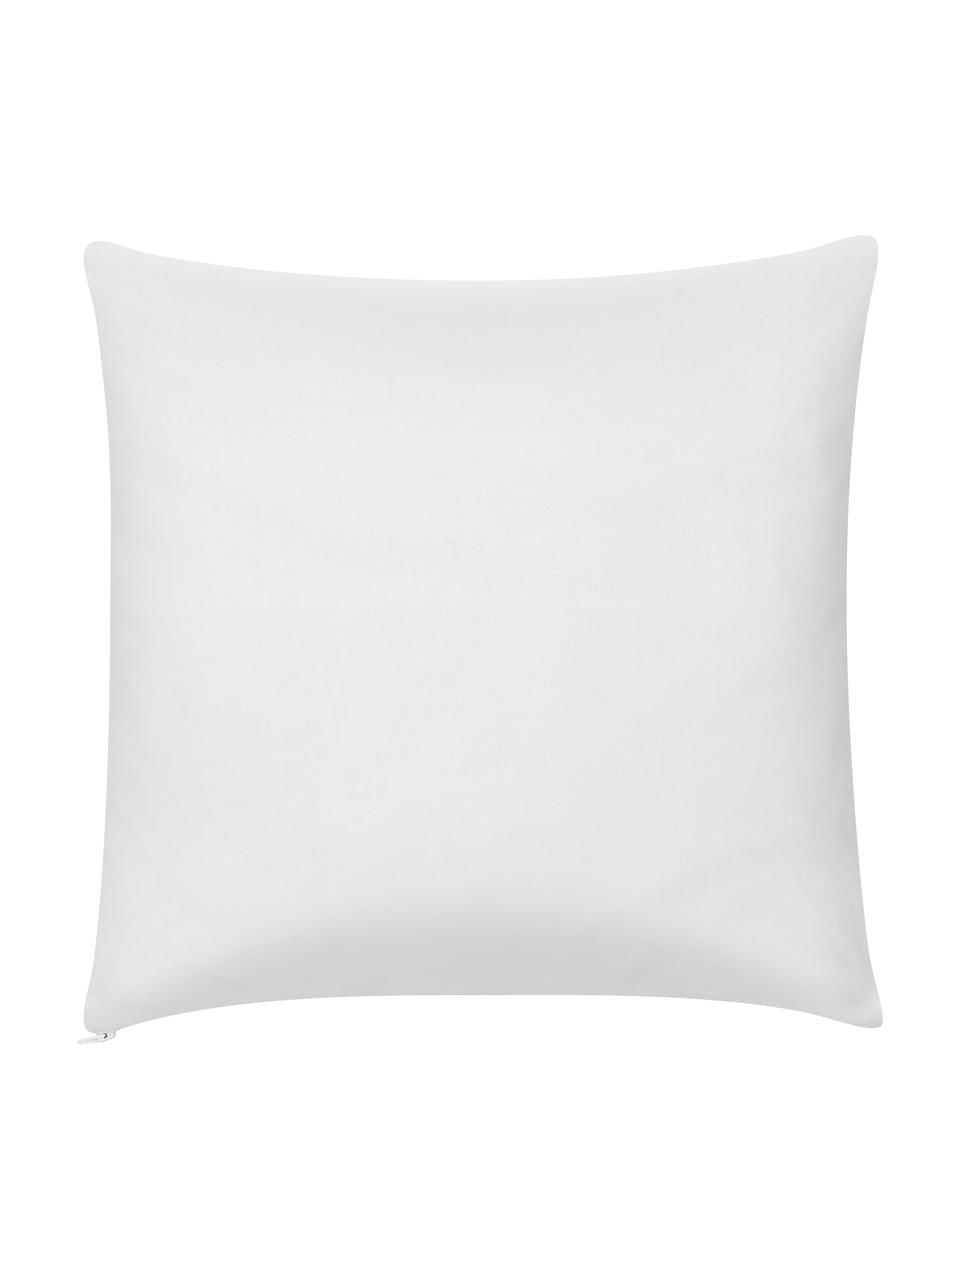 Kissenhülle Ivo Taupe/Weiß mit grafischem Muster, 100% Baumwolle, Weiß,Beige, 45 x 45 cm